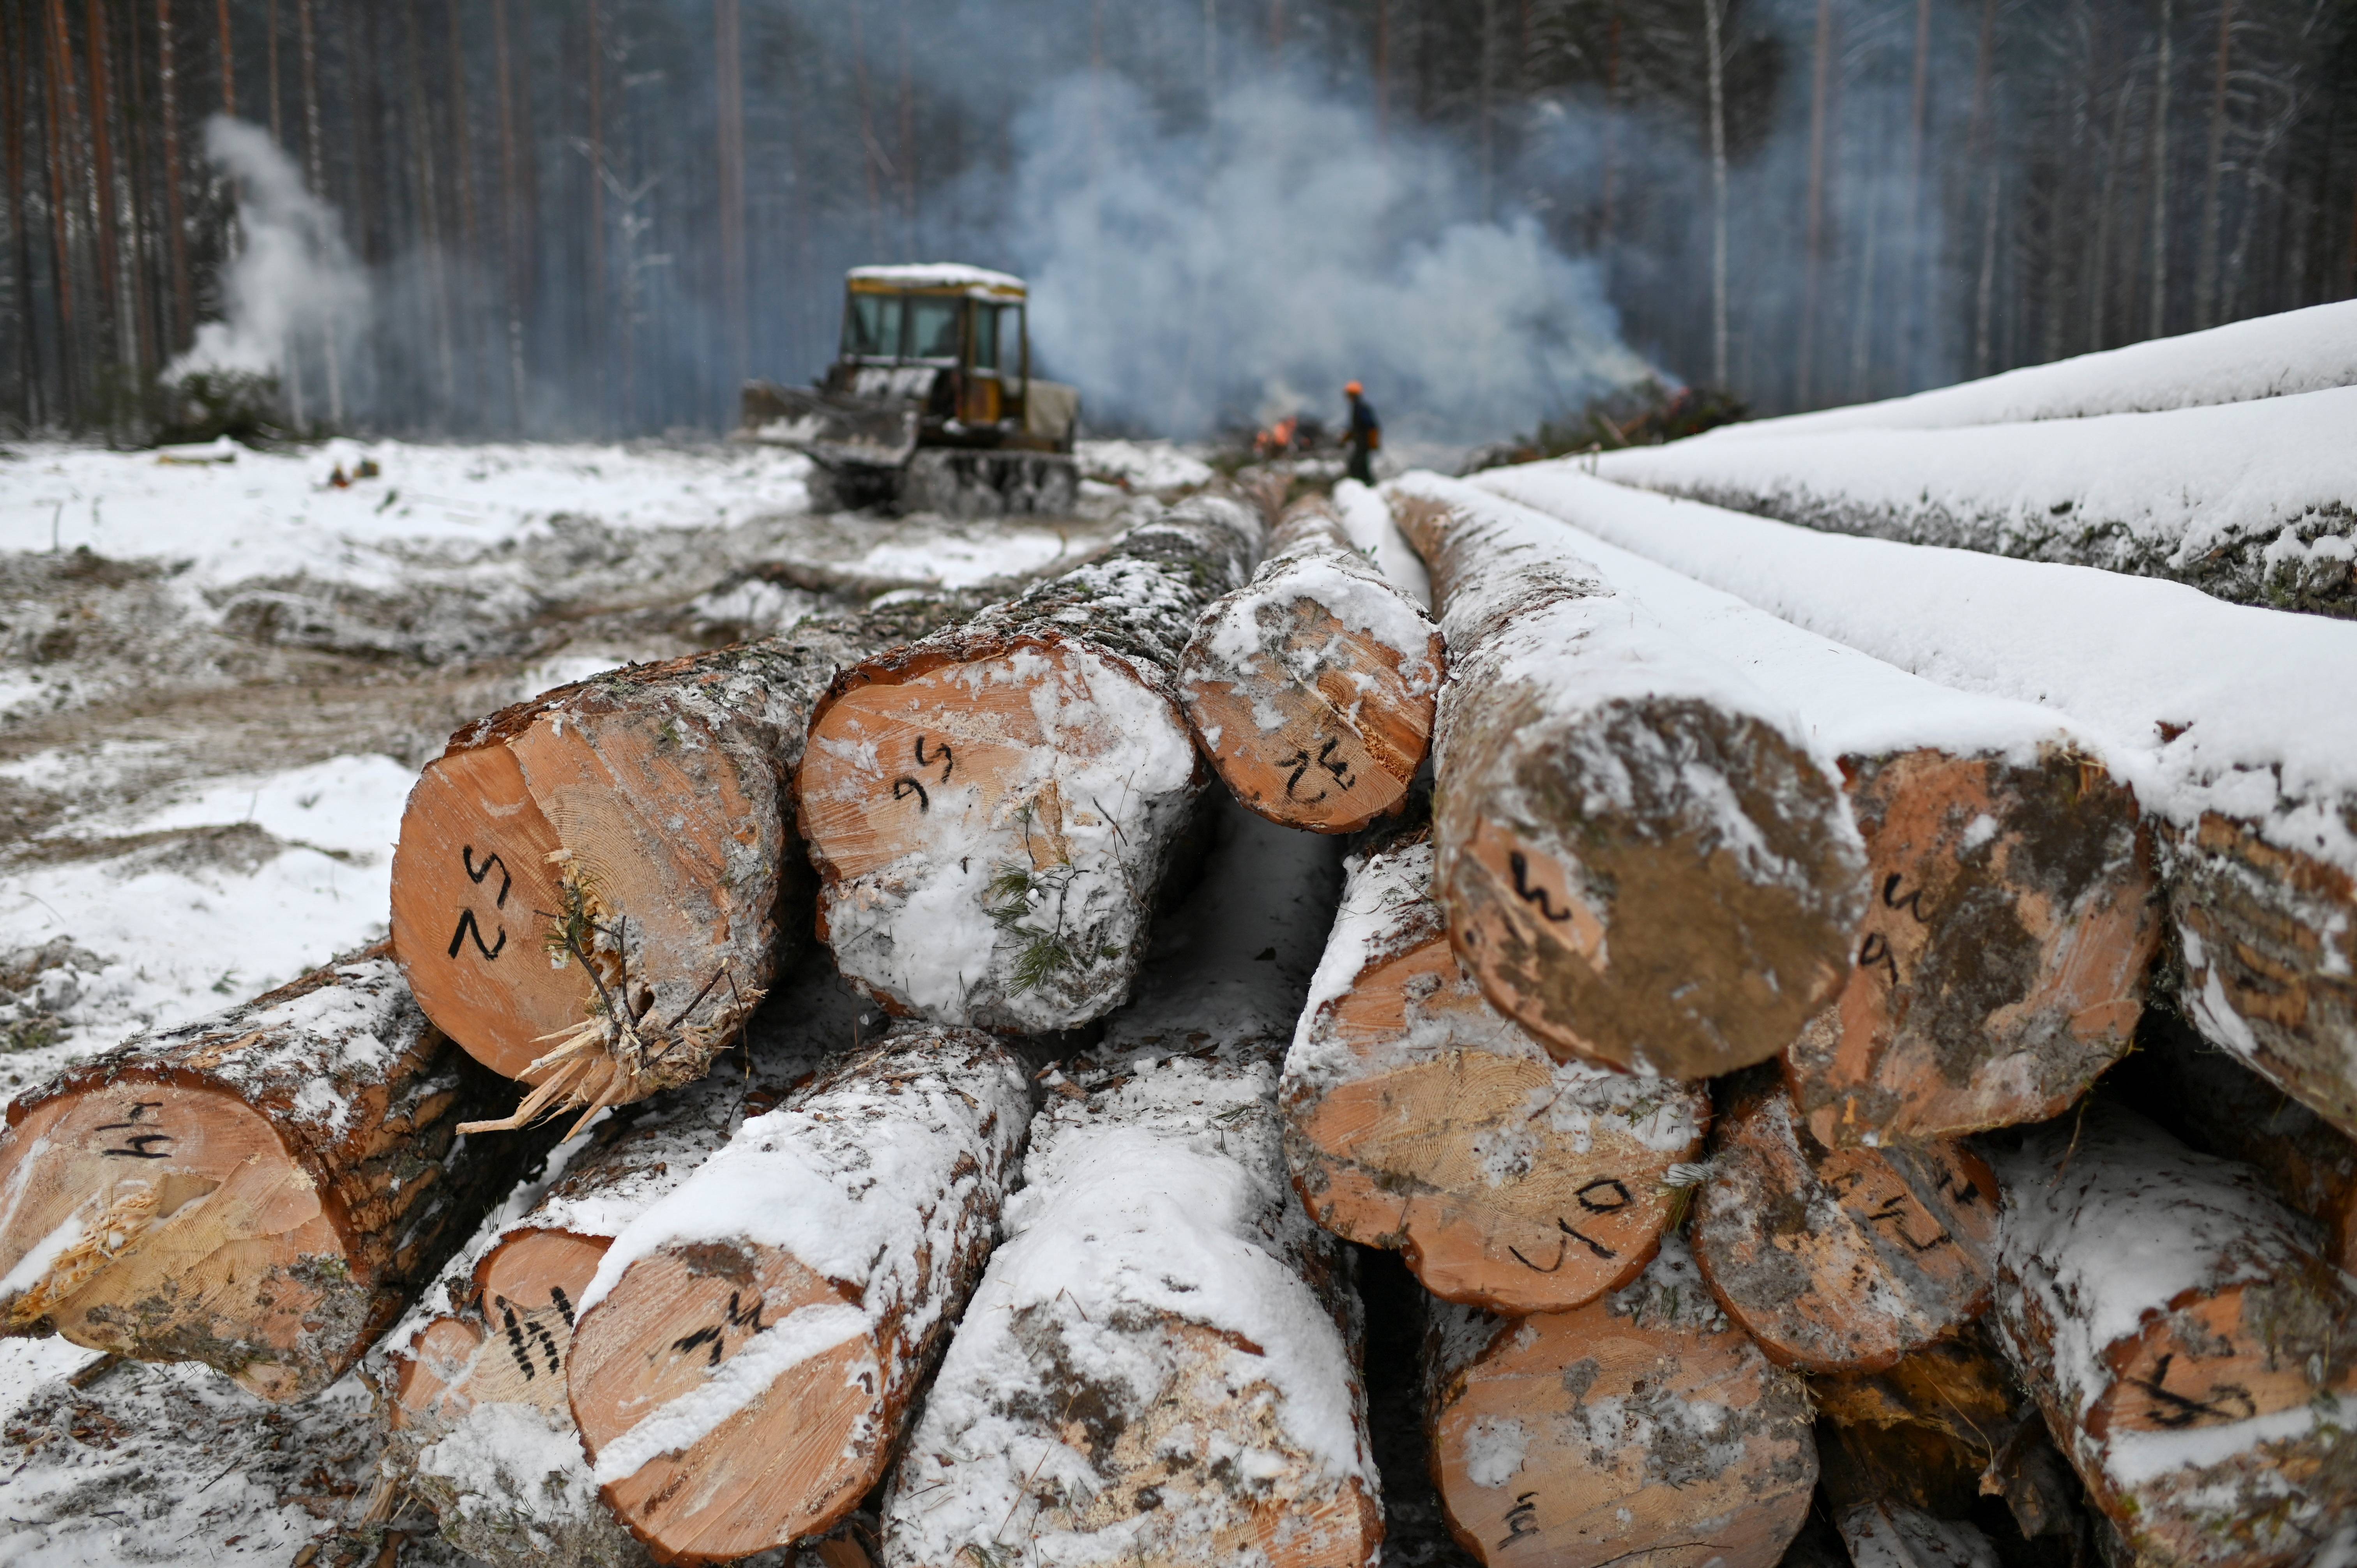 这是11月23日在俄罗斯鄂木斯克地区一个树林拍摄的木材